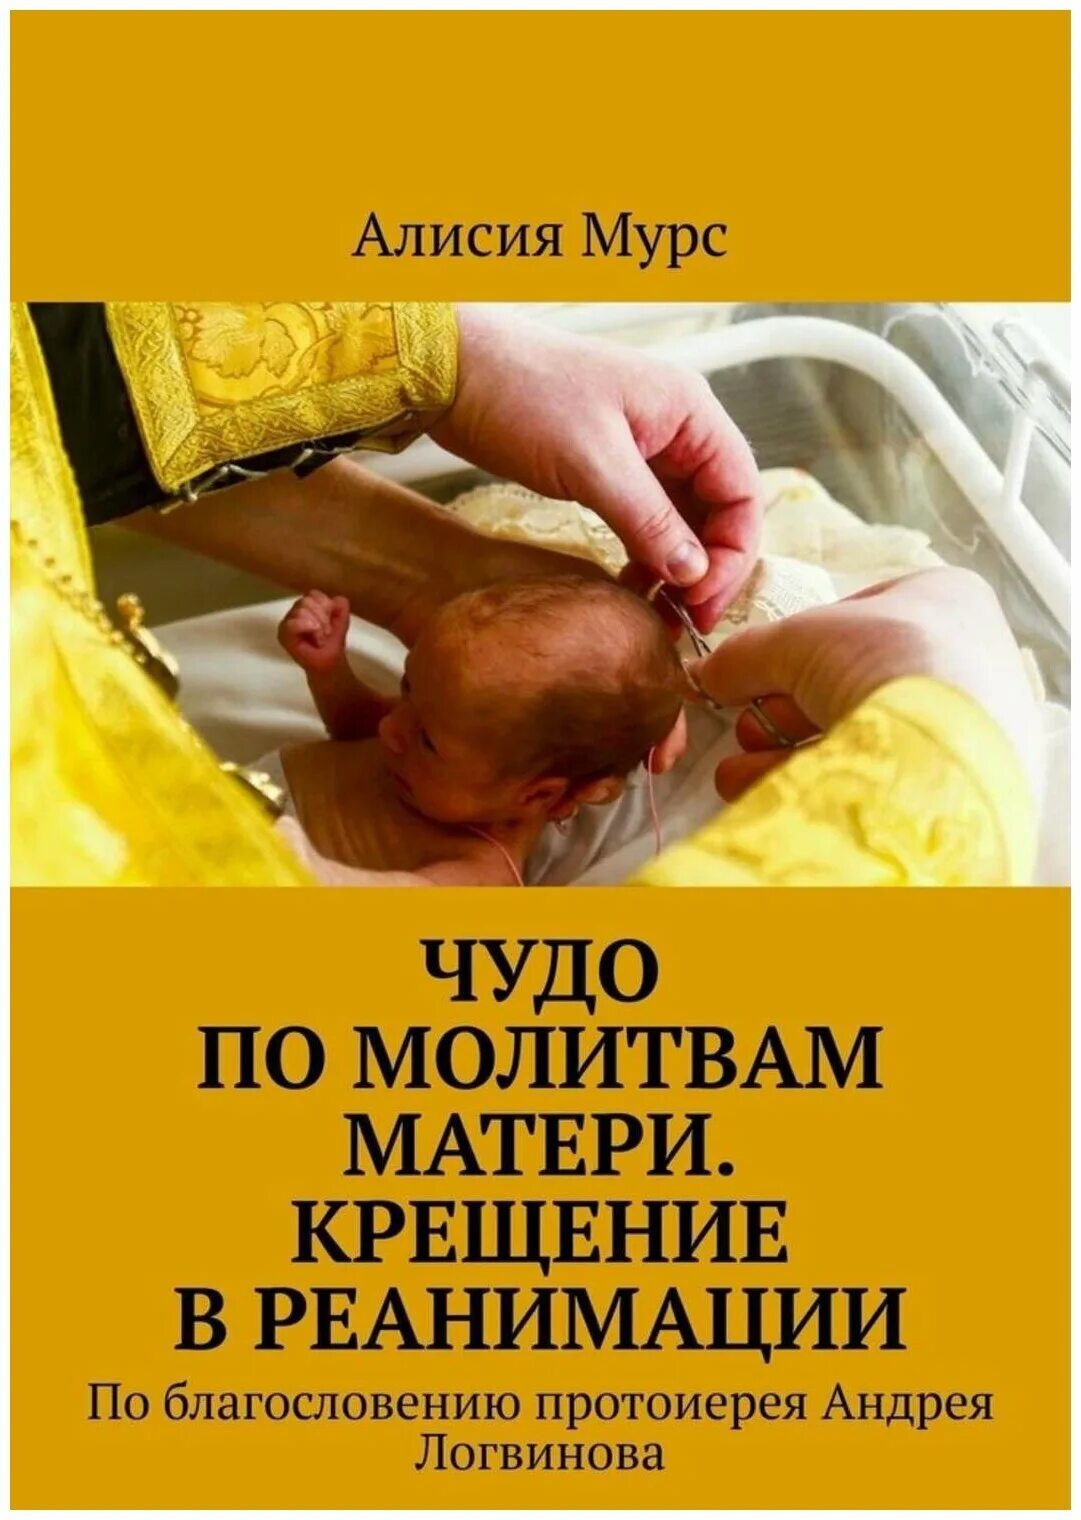 Молитва матери крещение. Молитва за новорожденного младенца в реанимации. Молитва о недоношенном младенце в реанимации. Молитва для недоношенного новорожденного ребенка.